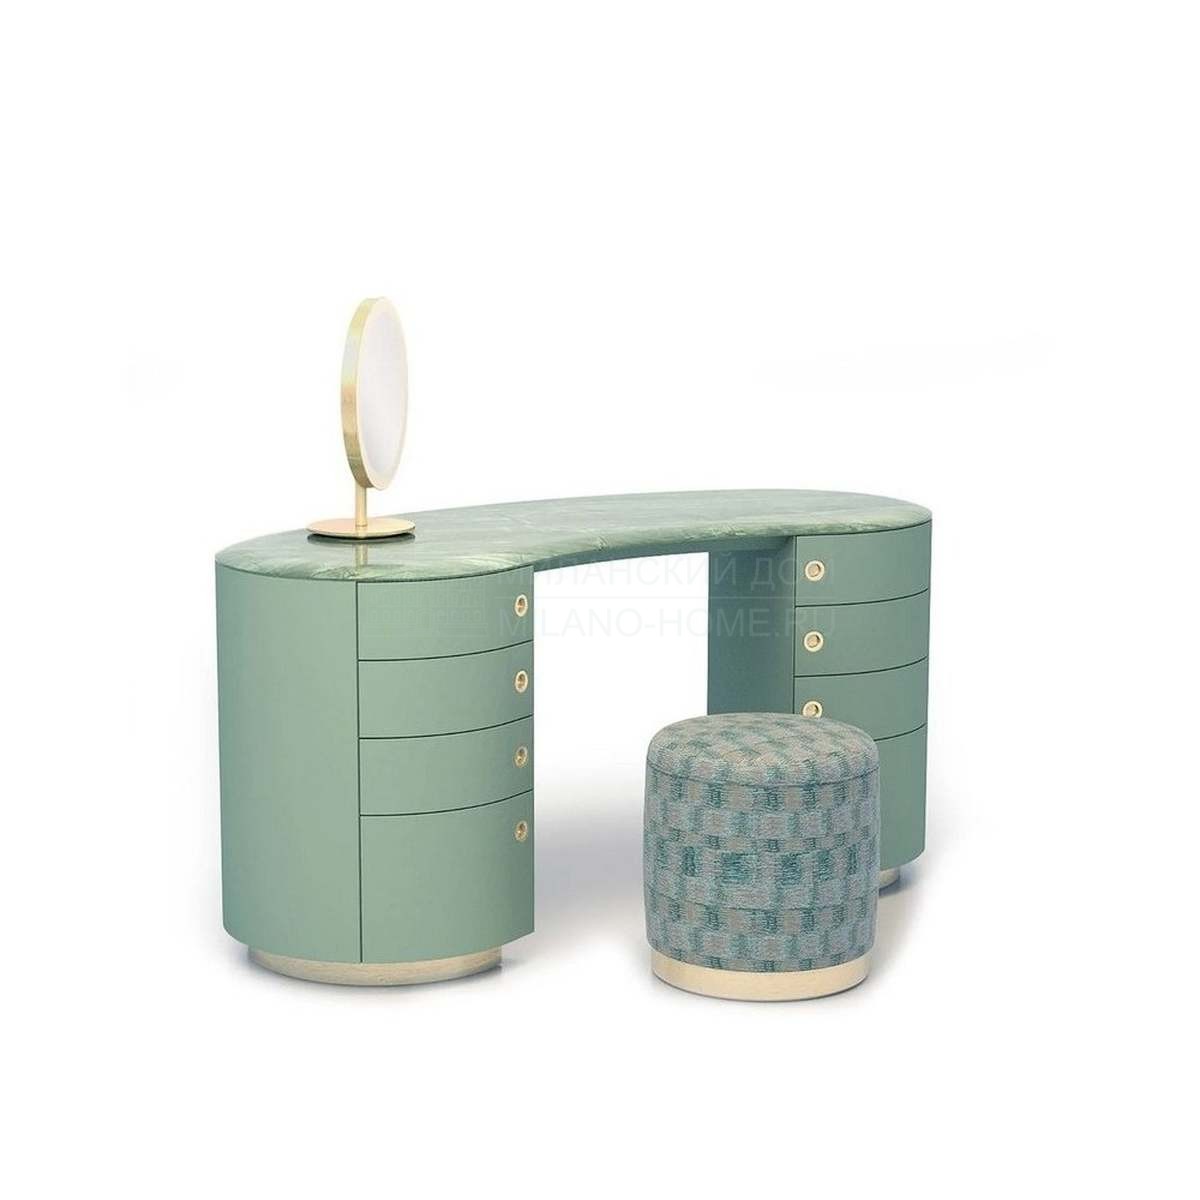 Туалетный столик Passion coiffeuse desk из Италии фабрики ARMANI CASA